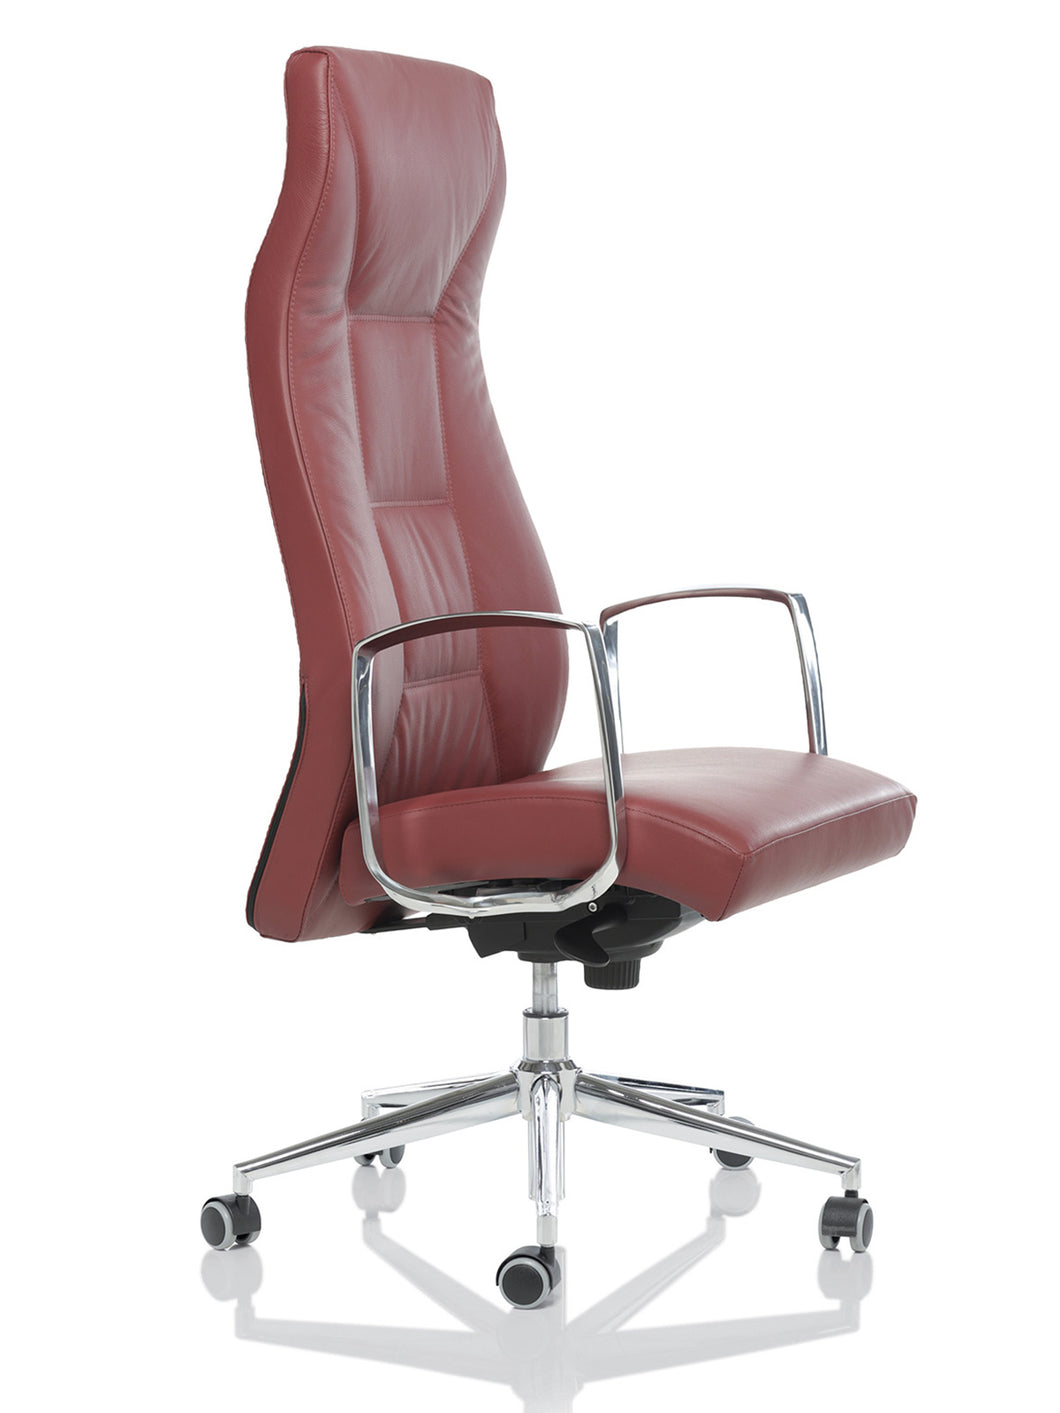 Montevideo Executive -Synchron Chair.